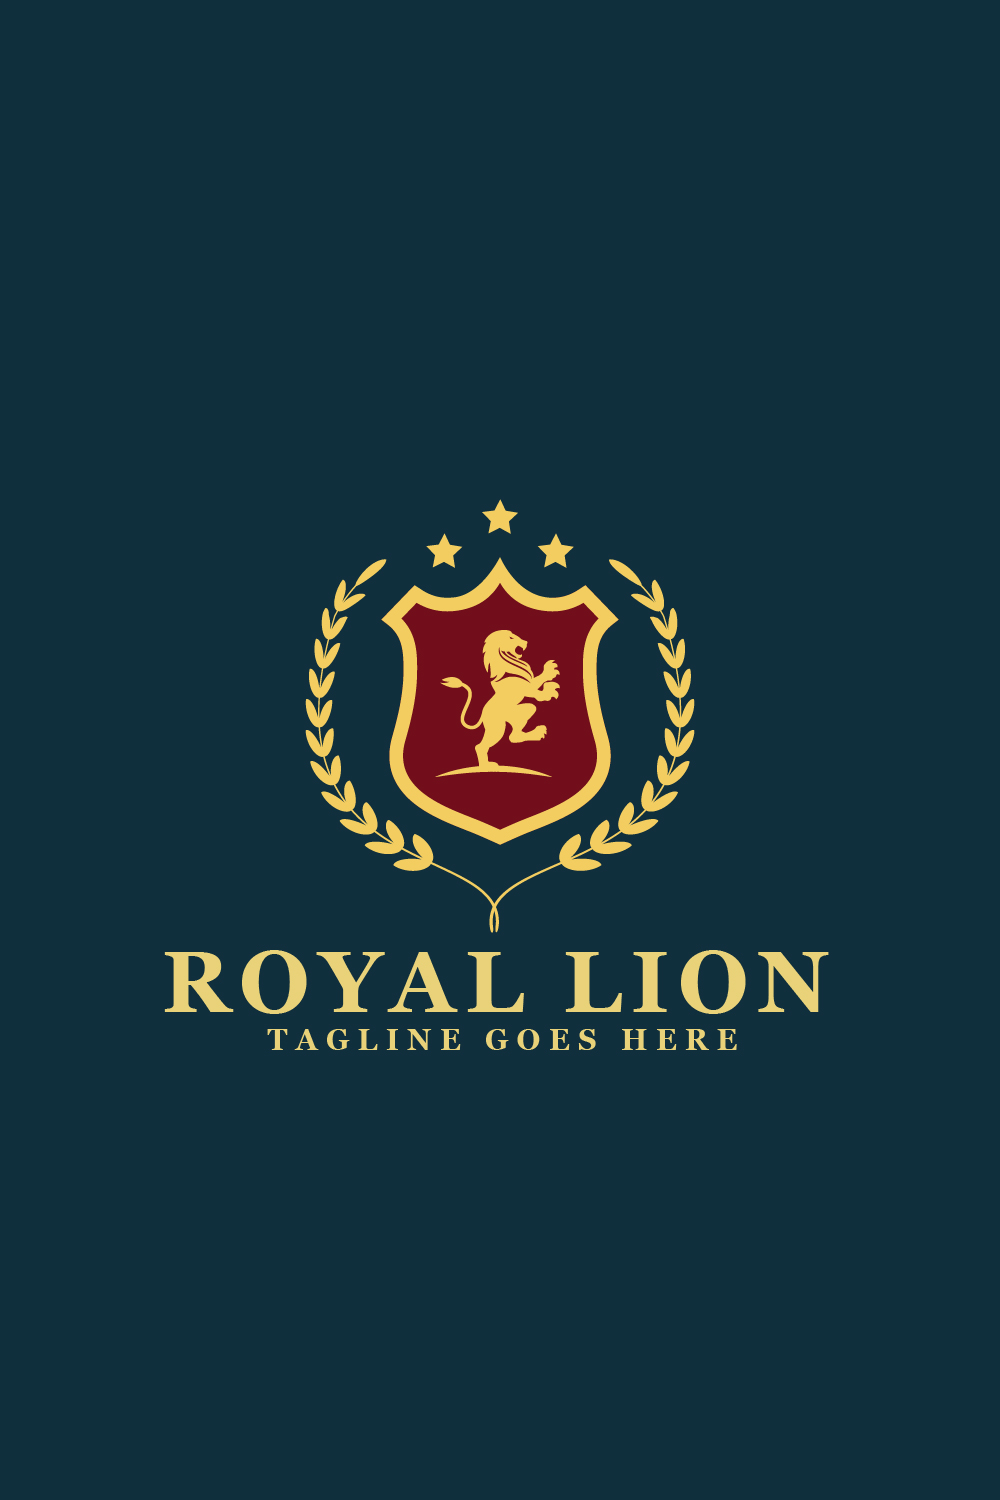 Royal Lion Heraldic Logos pinterest preview image.